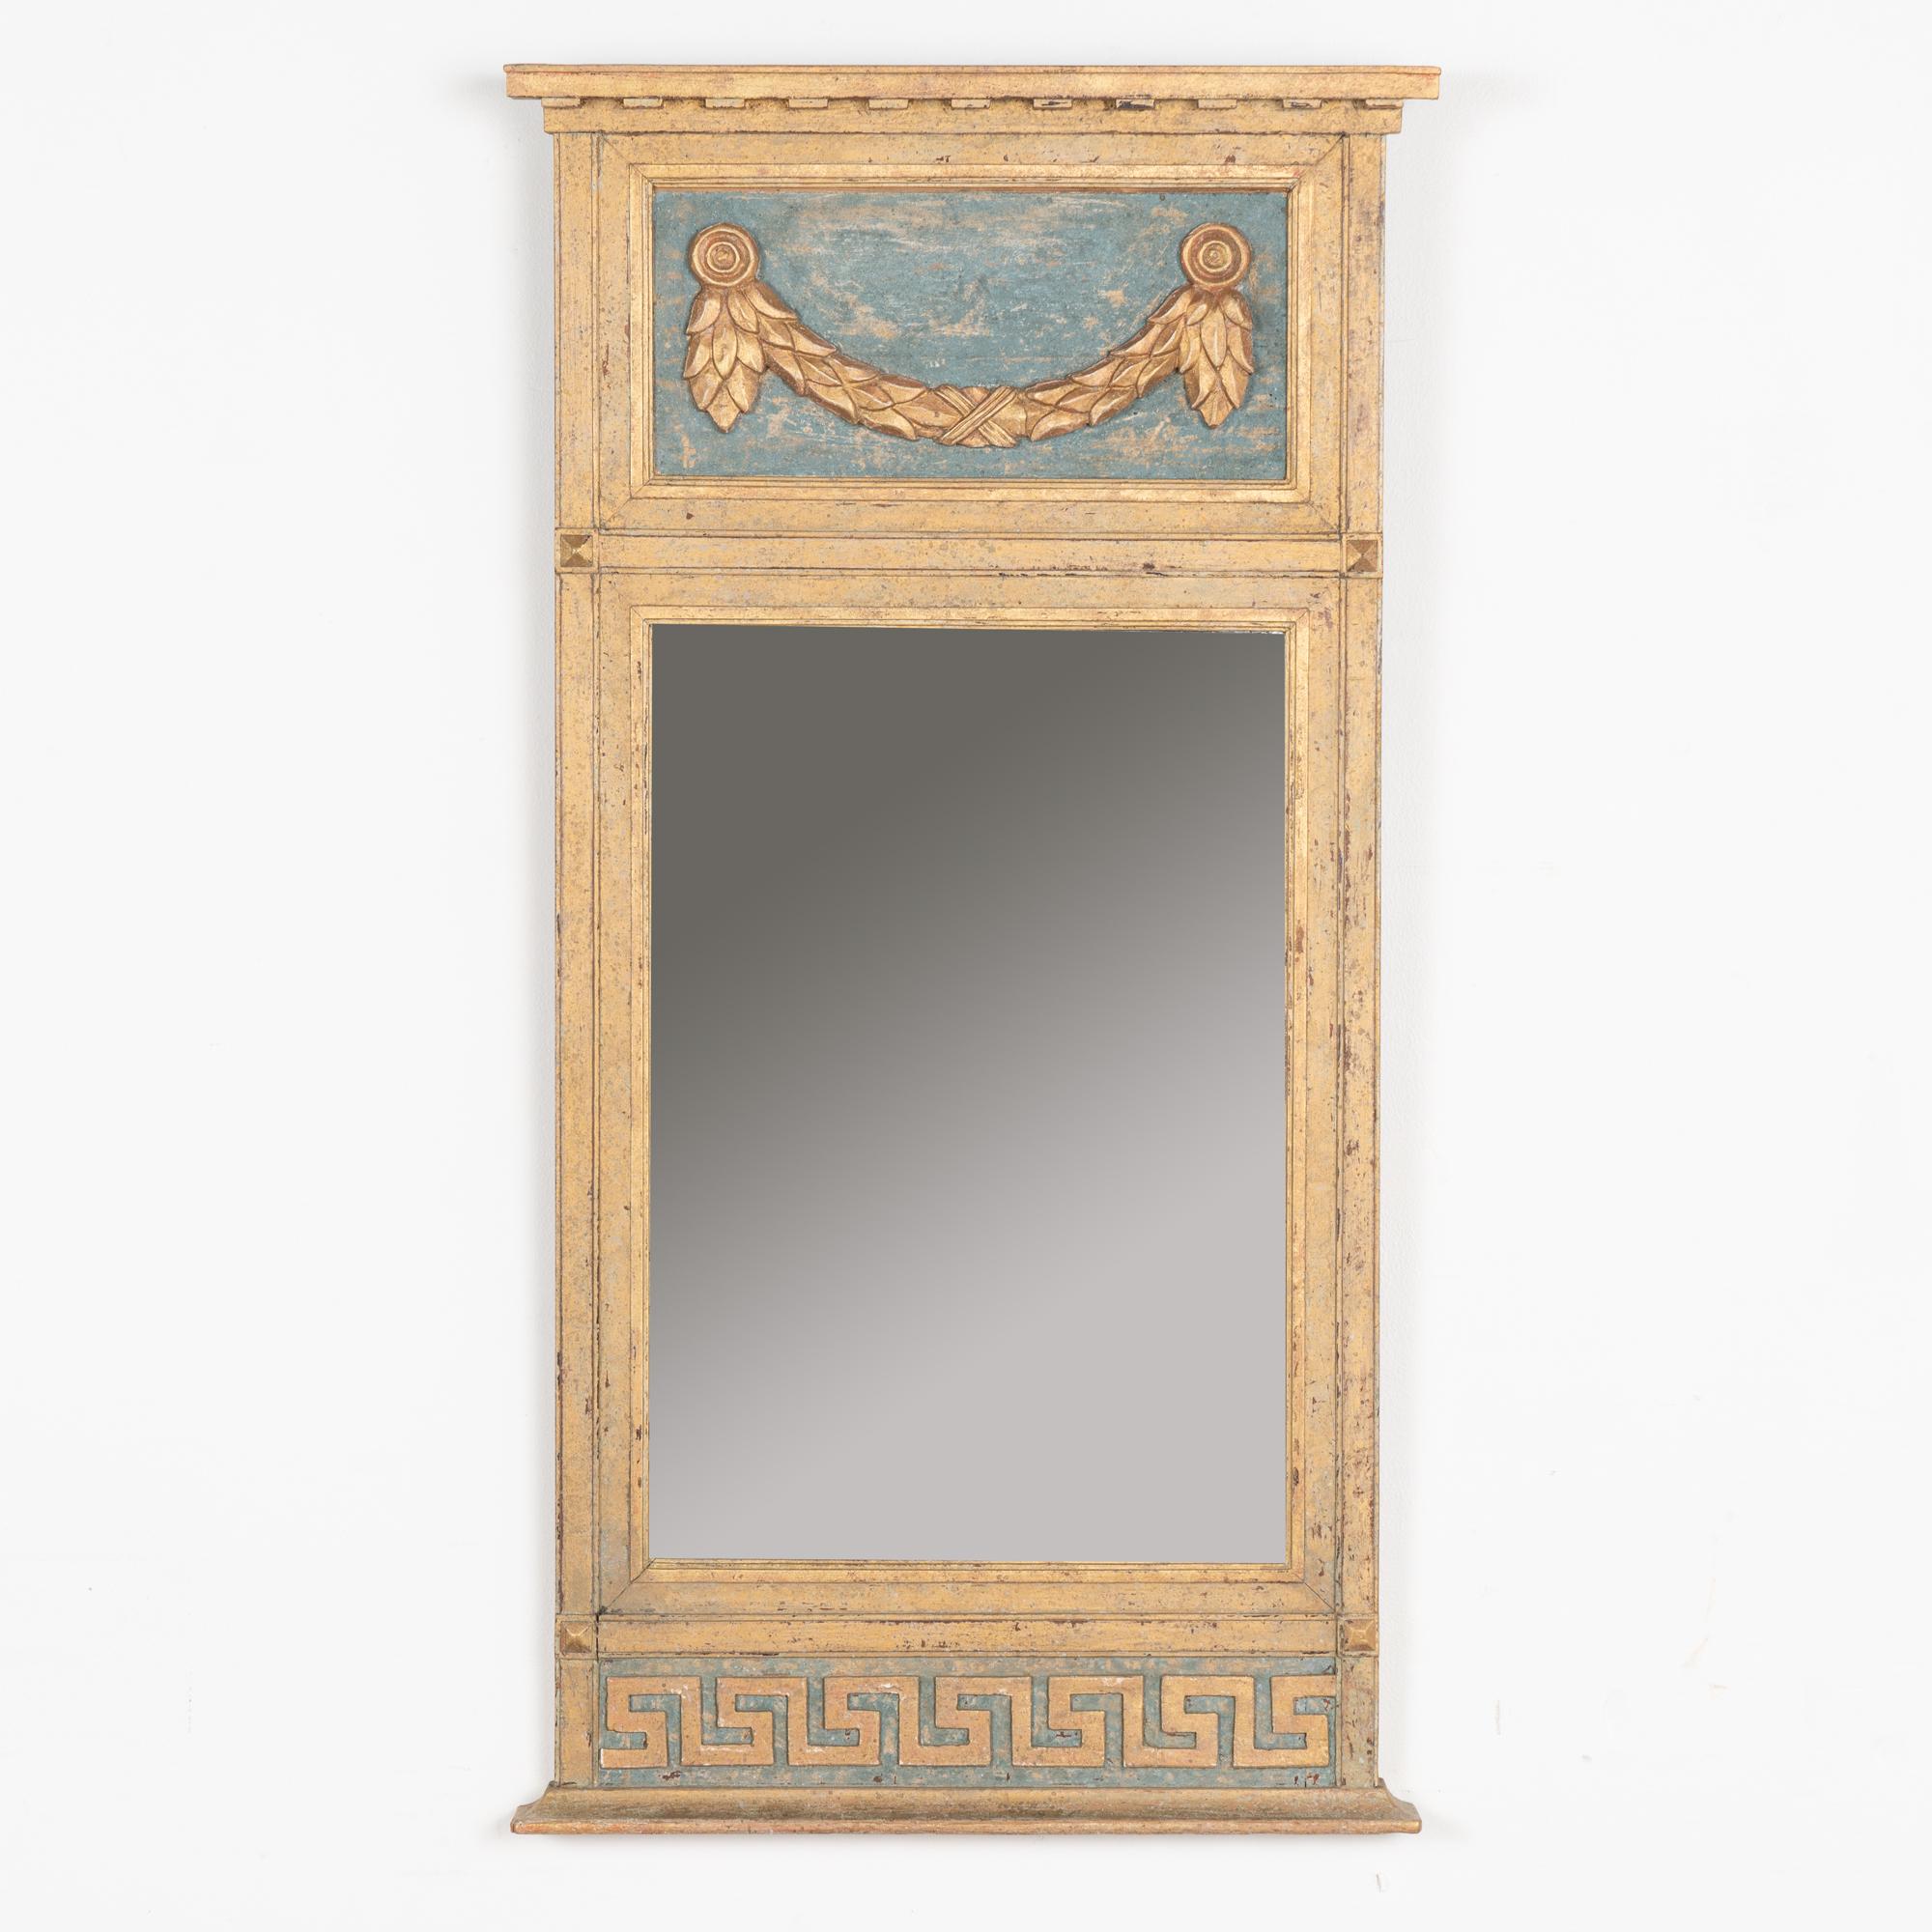 Joli miroir trumeau avec une guirlande sculptée appliquée dans la partie supérieure et un motif de clé grecque dans la partie inférieure. D'une hauteur de 3,5 pieds, sa taille lui permet d'être exposée dans une grande variété d'espaces.
Restauré,